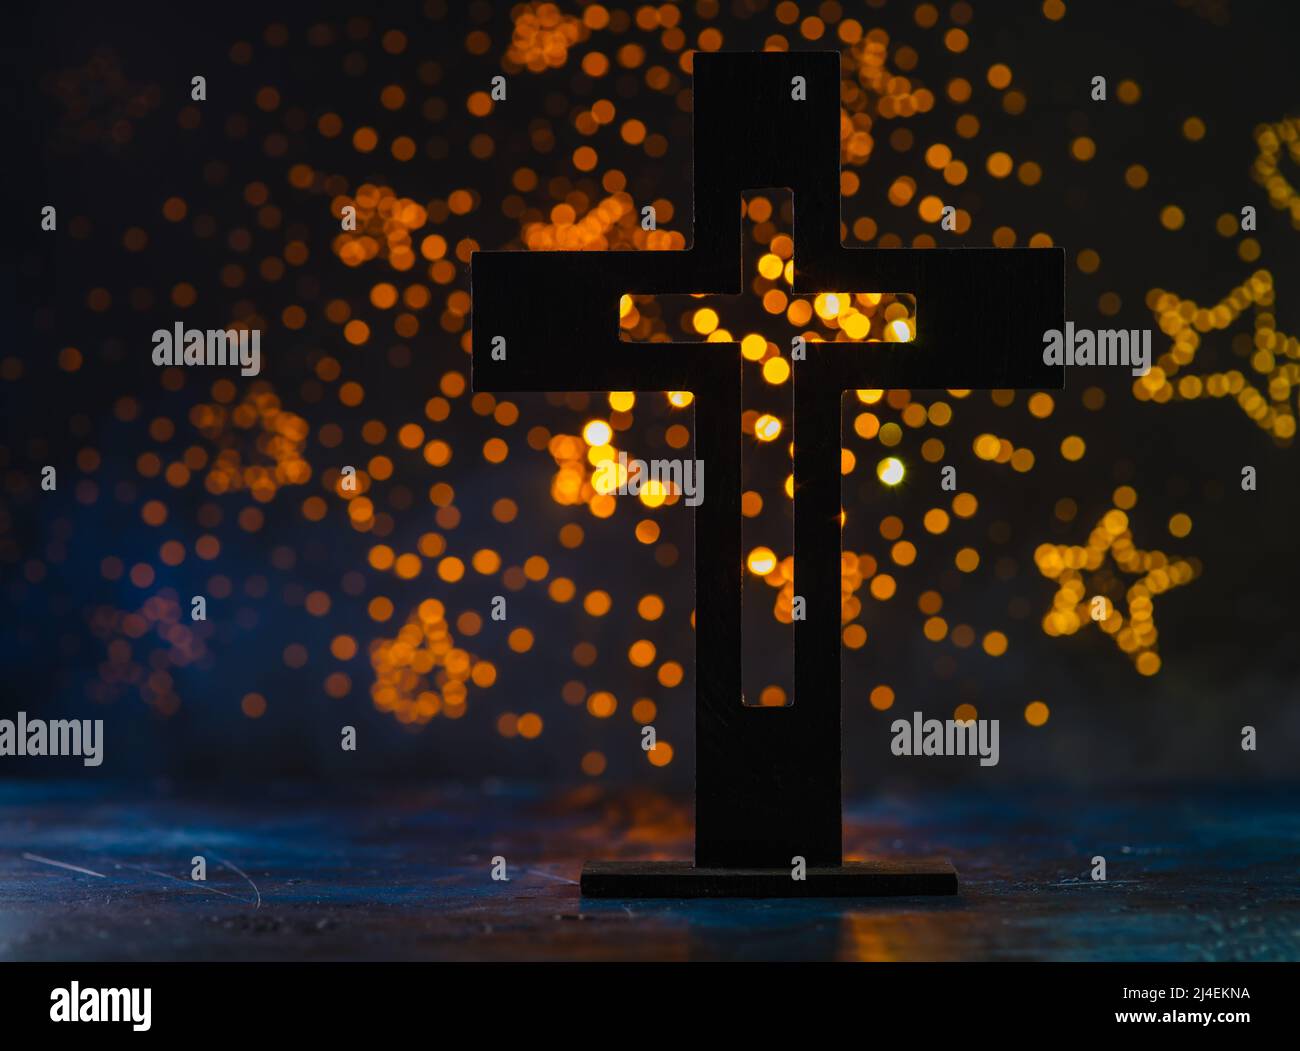 Croce cattolica su sfondo blu con stelle gialle scintillanti. Simbolo di fede e spiritualità, amore e perdono. Religione, cattolicesimo, crucif Foto Stock